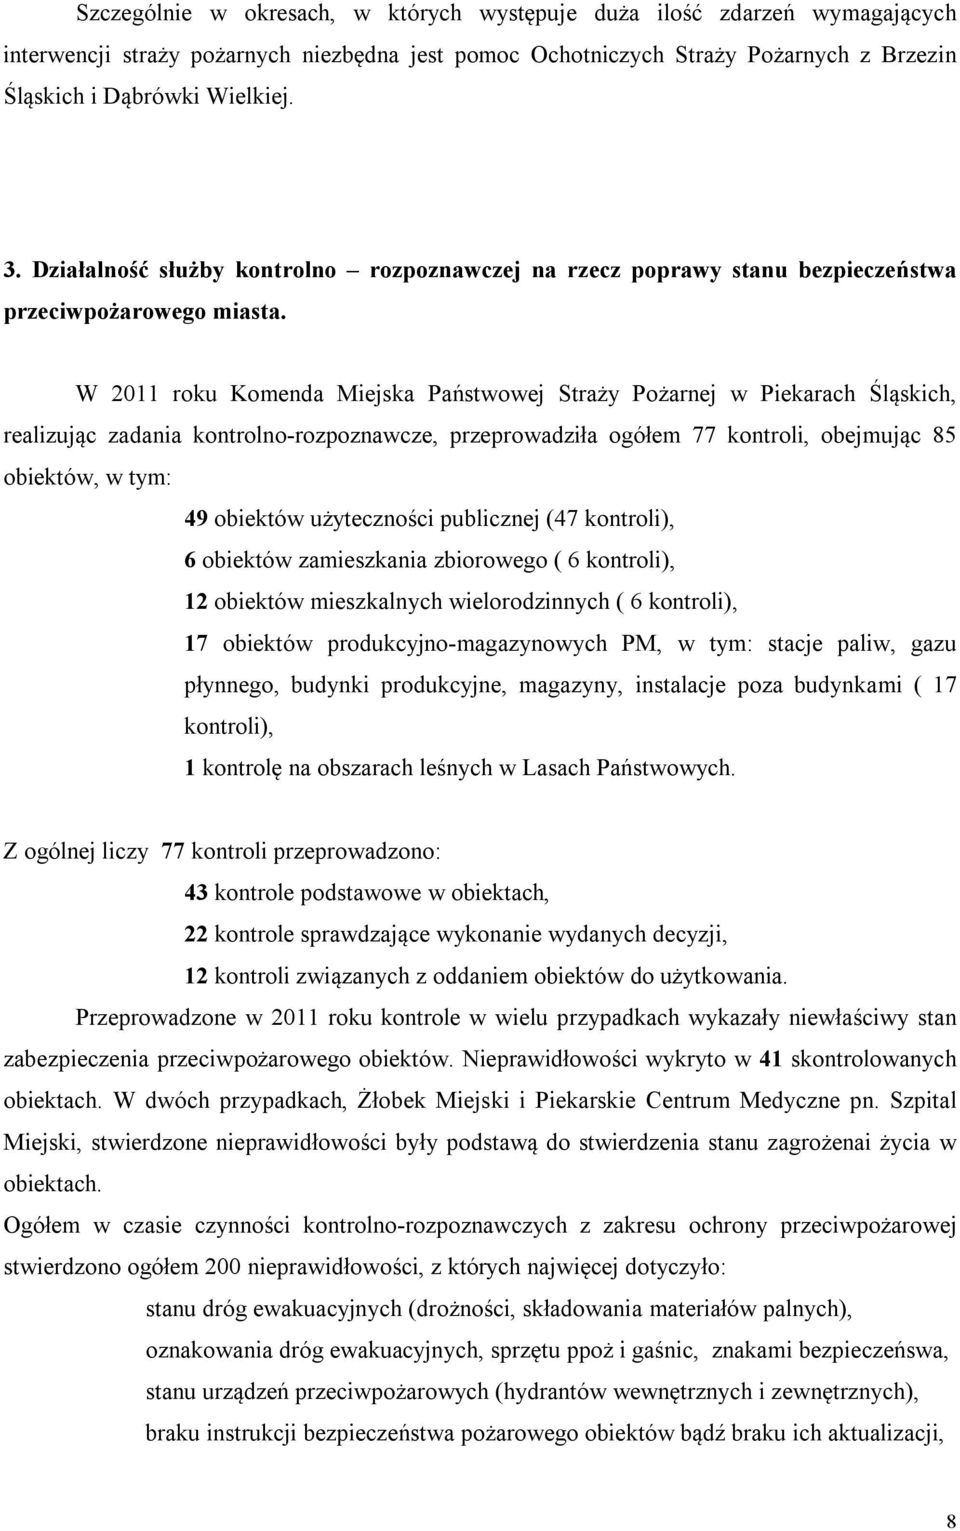 W 2011 roku Komenda Miejska Państwowej Straży Pożarnej w Piekarach Śląskich, realizując zadania kontrolno-rozpoznawcze, przeprowadziła ogółem 77 kontroli, obejmując 85 obiektów, w tym: 49 obiektów